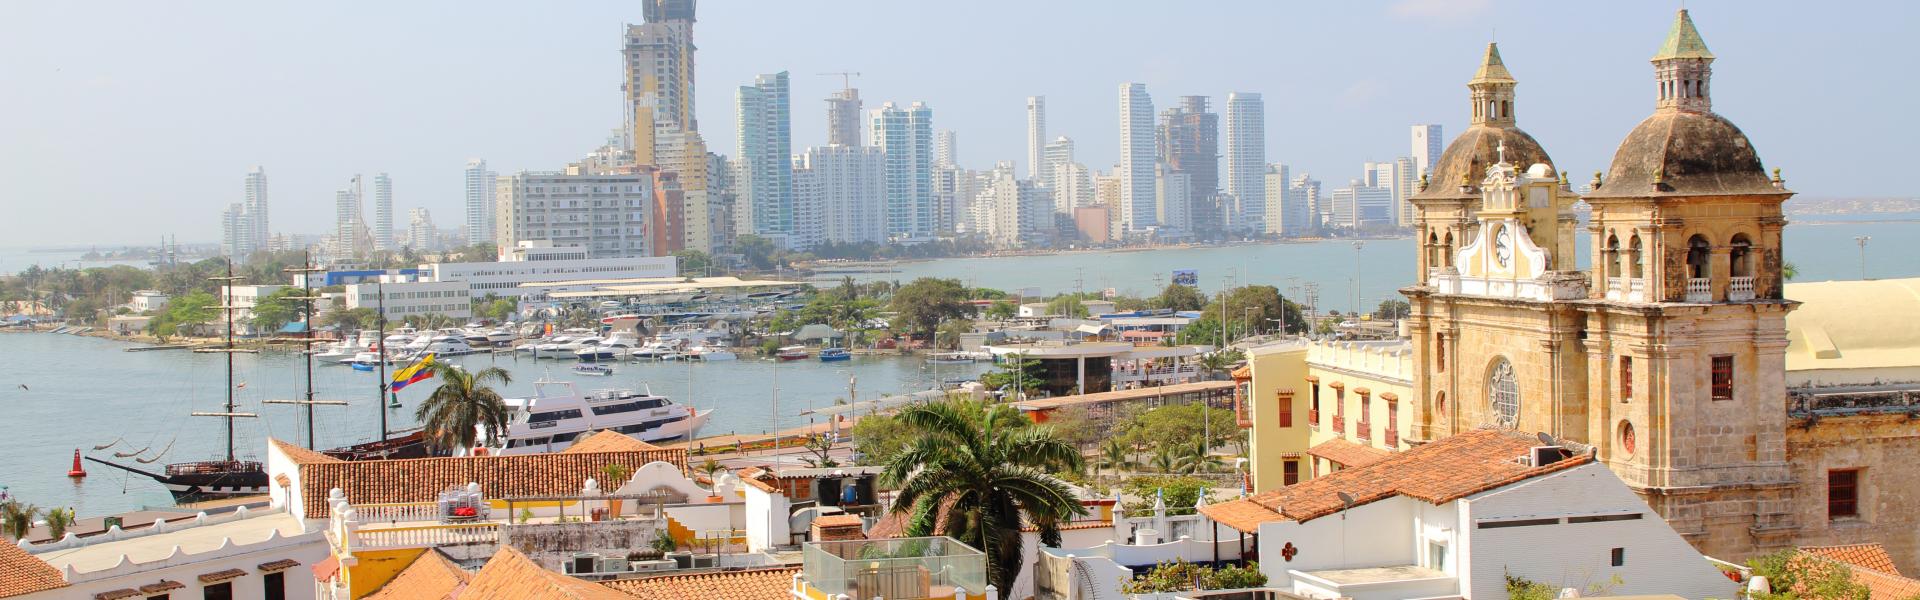 Aluguel de temporada, chalés e pousadas em Cartagena - LarDeFérias